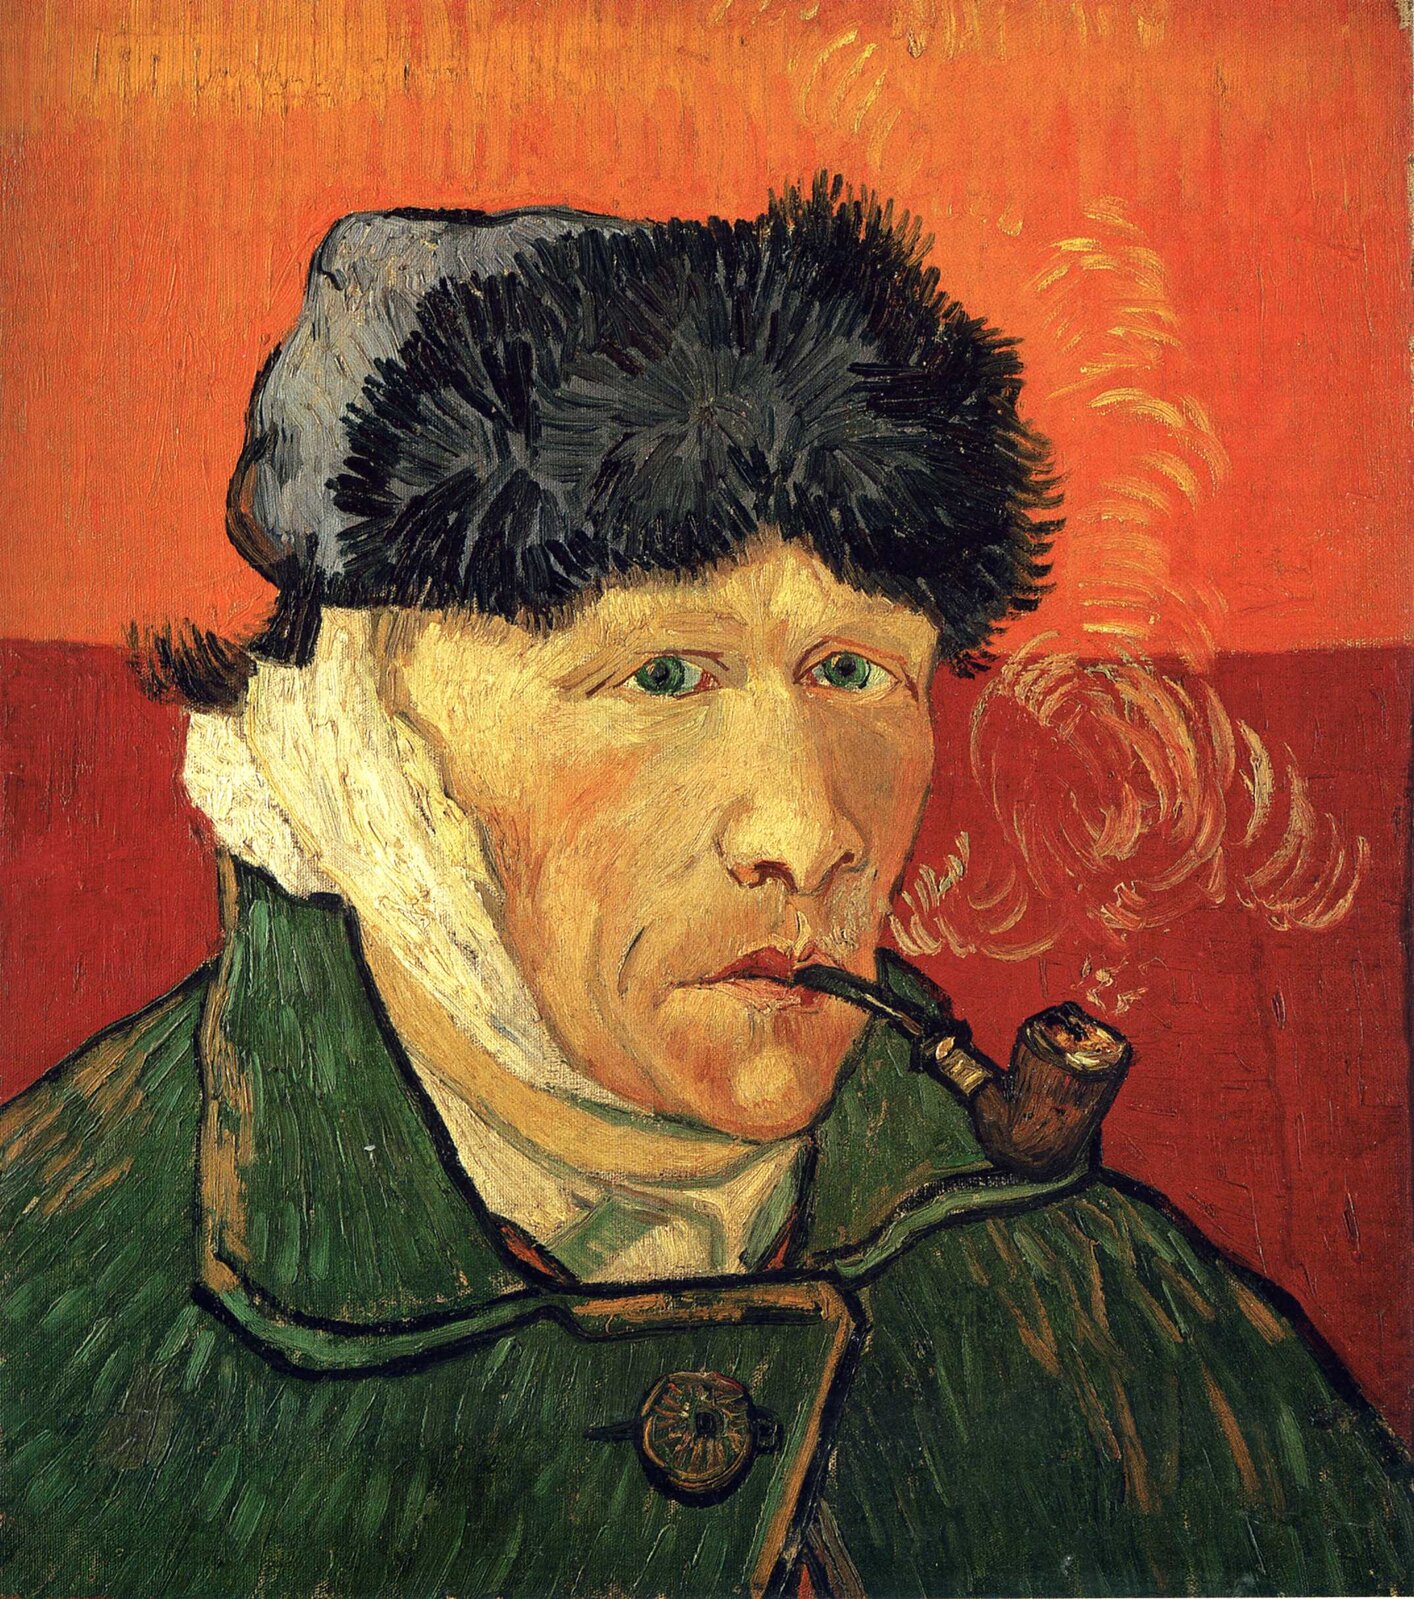 Obraz przedstawia autoportret Vincenta van Gogha. Mężczyzna ma na głowie szarą czapkę z kożuchem z przodu. Ma zabandażowane prawe ucho. Ma zielone oczy, duży i lekko zakrzywiony nos. W ustach trzyma brązową fajkę, z której wydostaje się biały dym. Ubrany jest w zielony płaszcz. Mężczyzna ukazany jest od ramion w górę. Tło podzielone jest na dwa kolory: dolna część obrazu, sięgająca do ucha mężczyzny, jest w kolorze czerwonym. Górna część obrazu jest pomarańczowa.